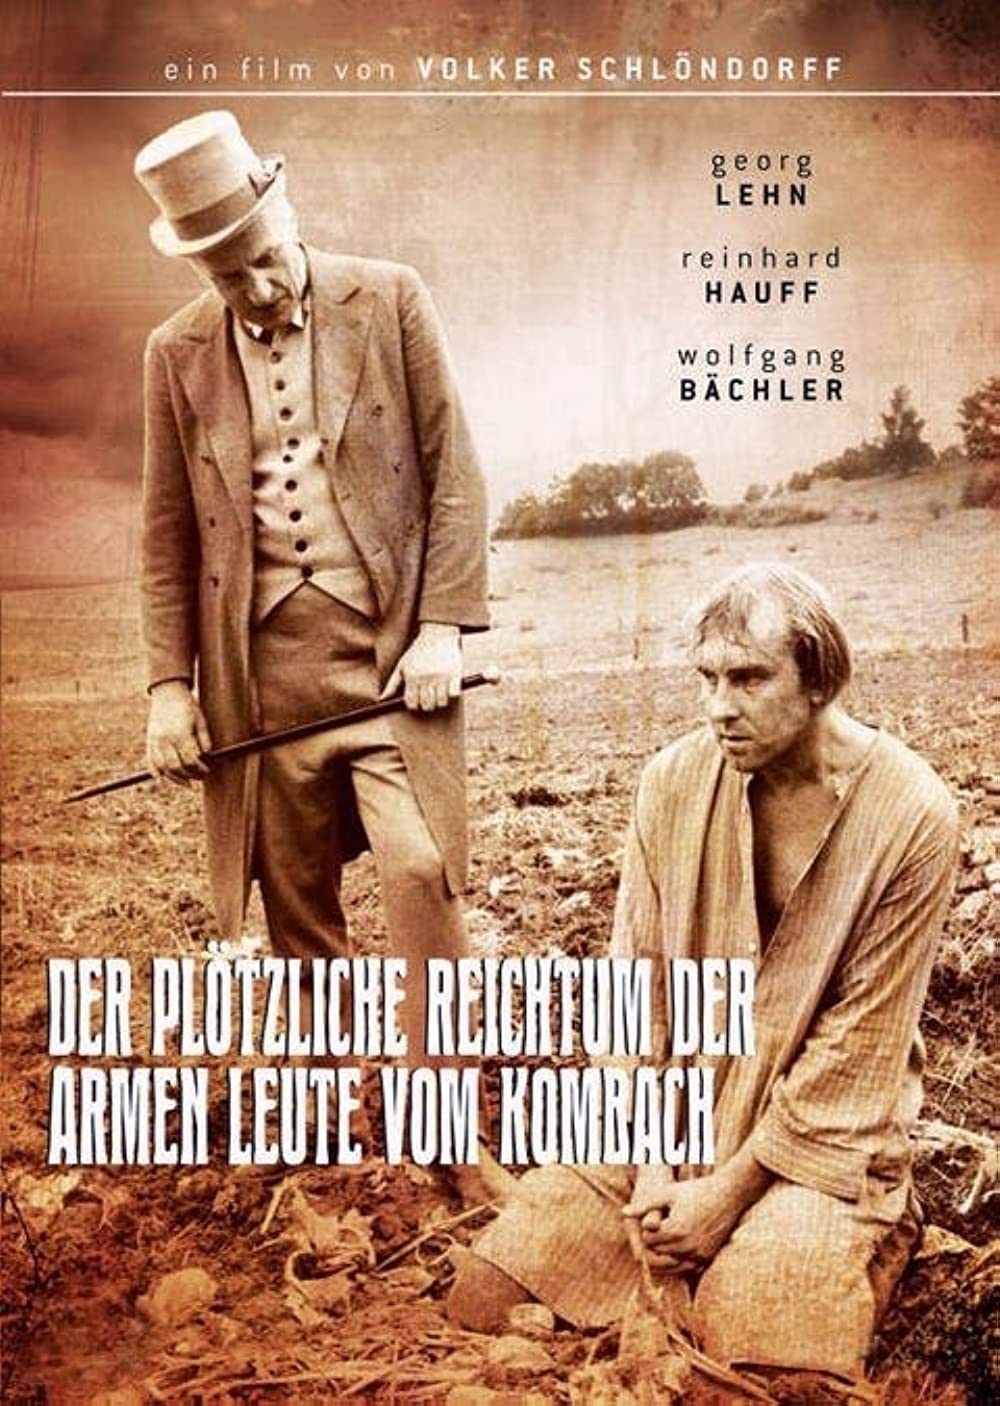 Filmbeschreibung zu Der plötzliche Reichtum der armen Leute von Kombach